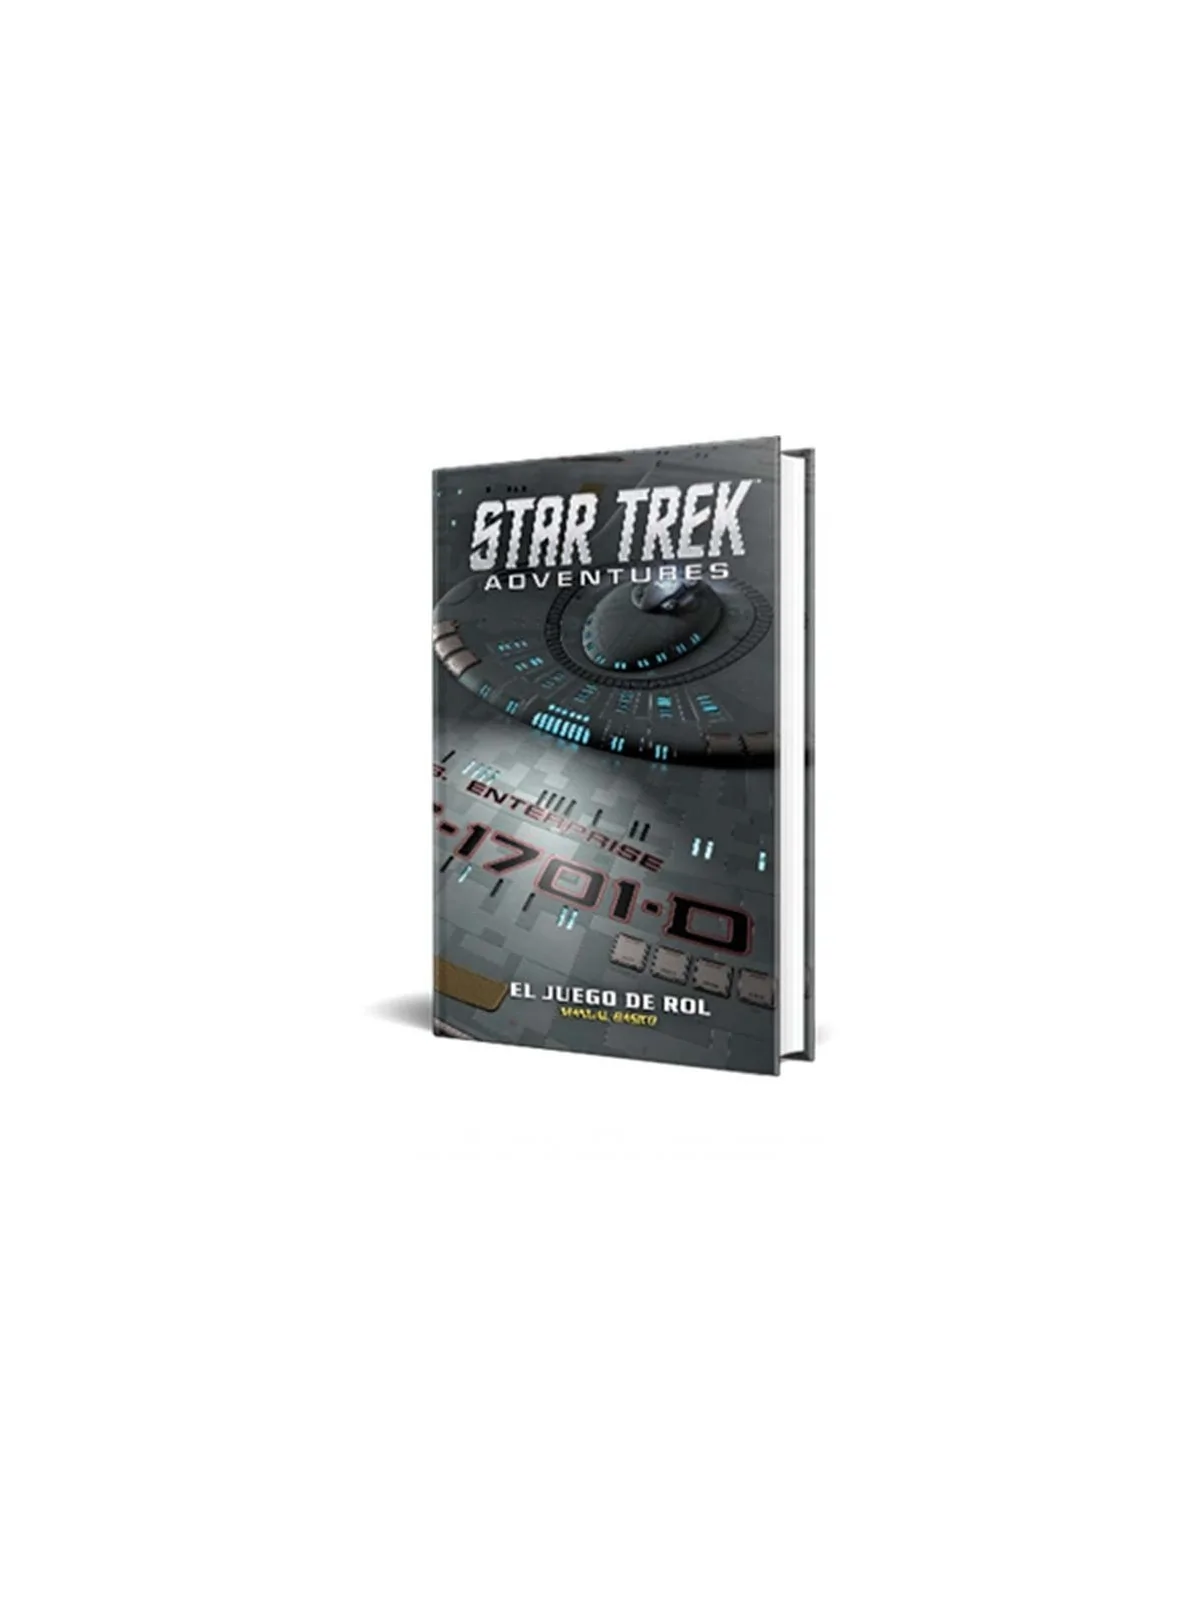 Comprar Star Trek Adventures barato al mejor precio 52,20 € de Holocub